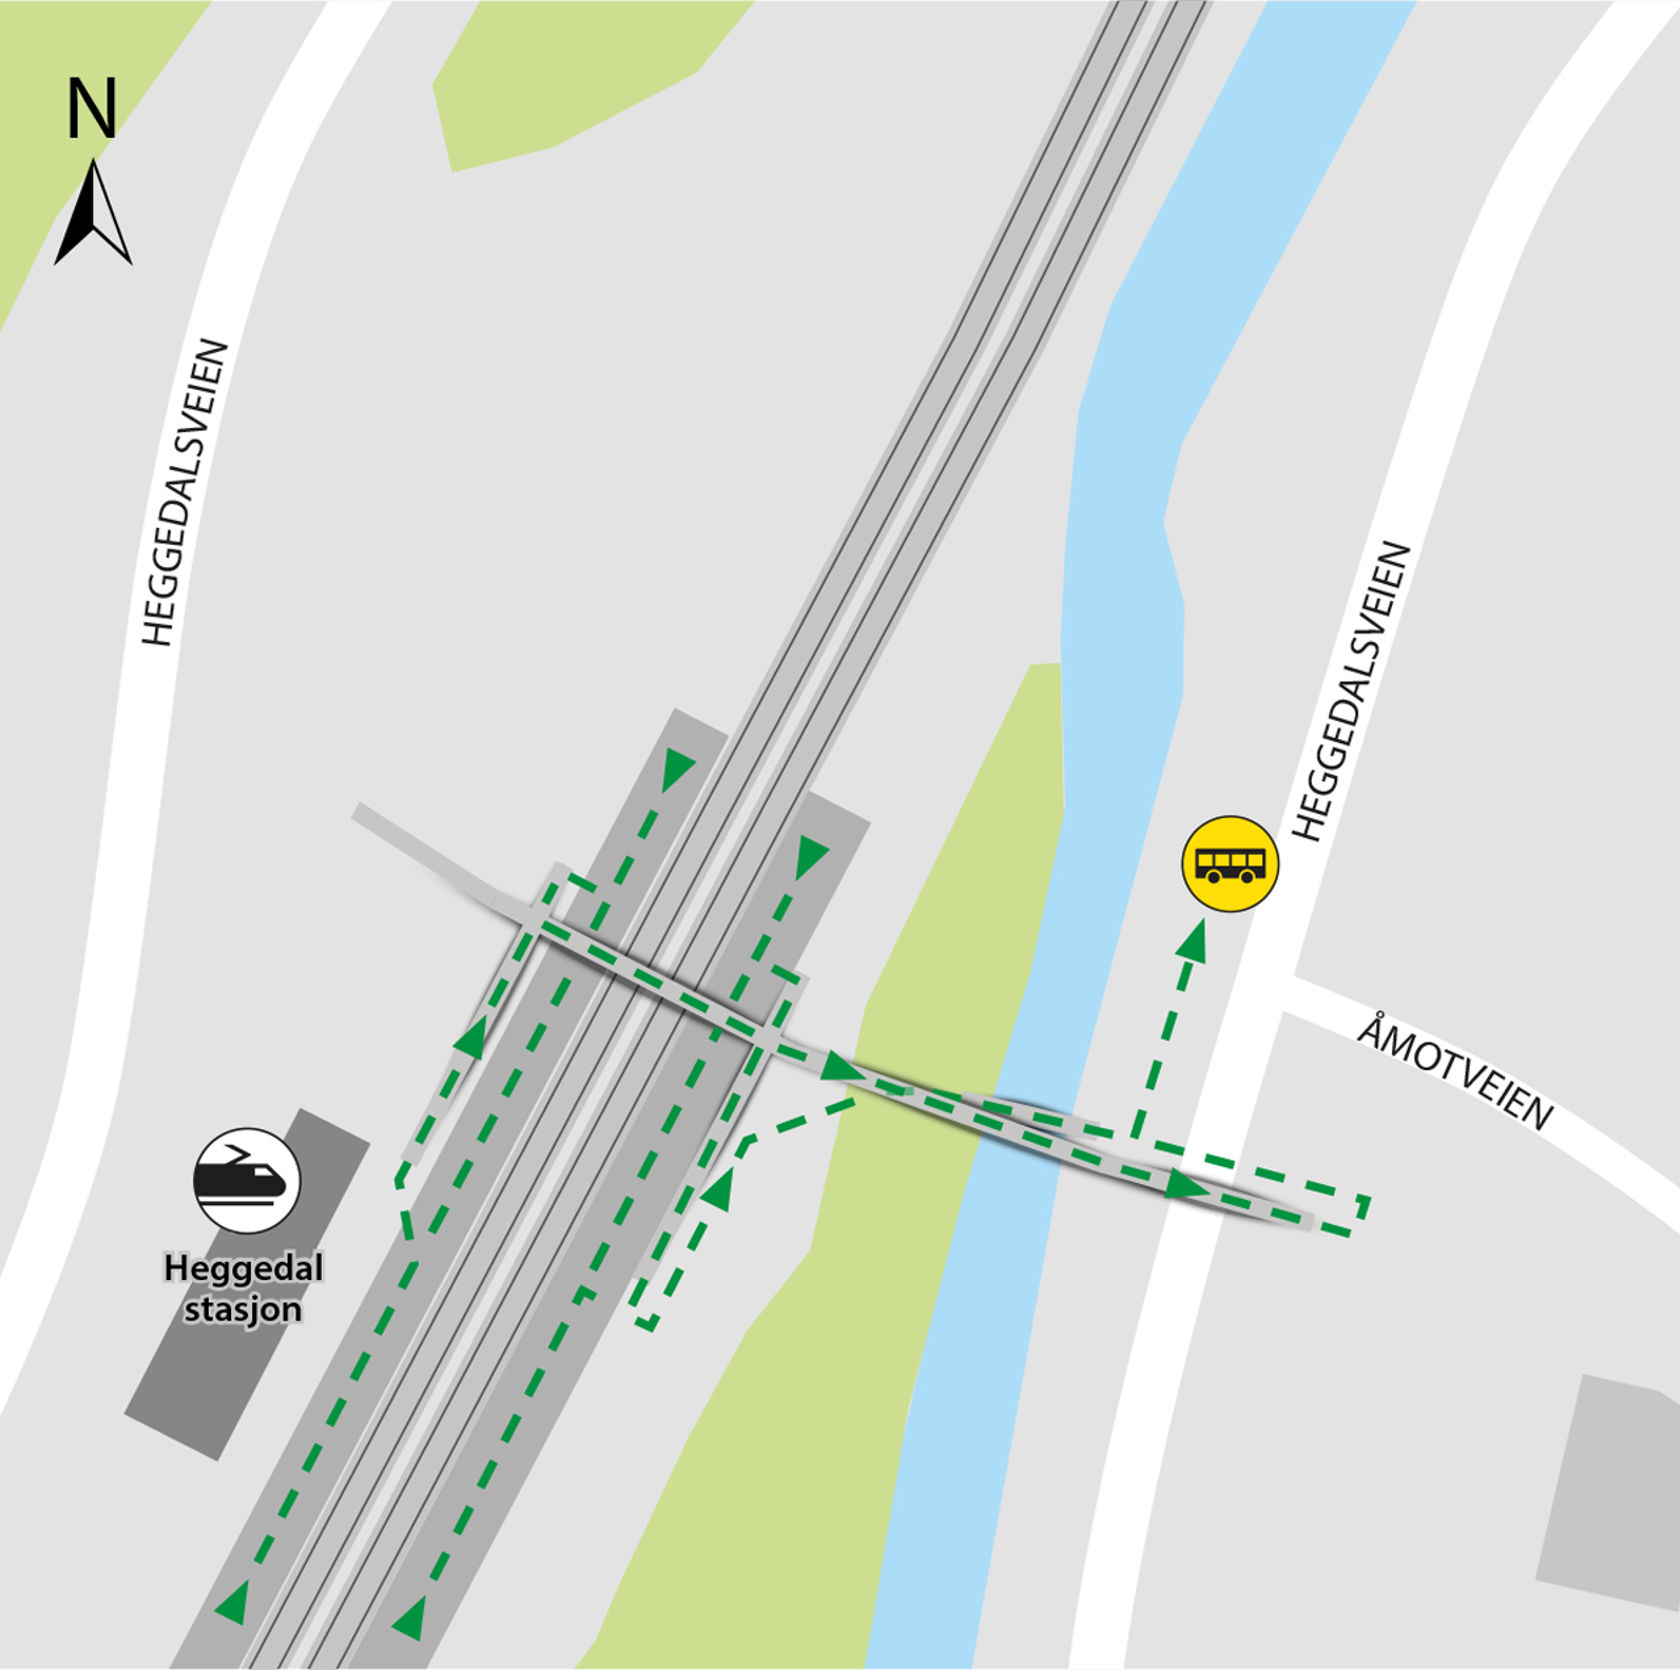 Kartet viser at bussene kjører fra bussholdeplassen Heggedal stasjon som ligger i Heggedalsveien.